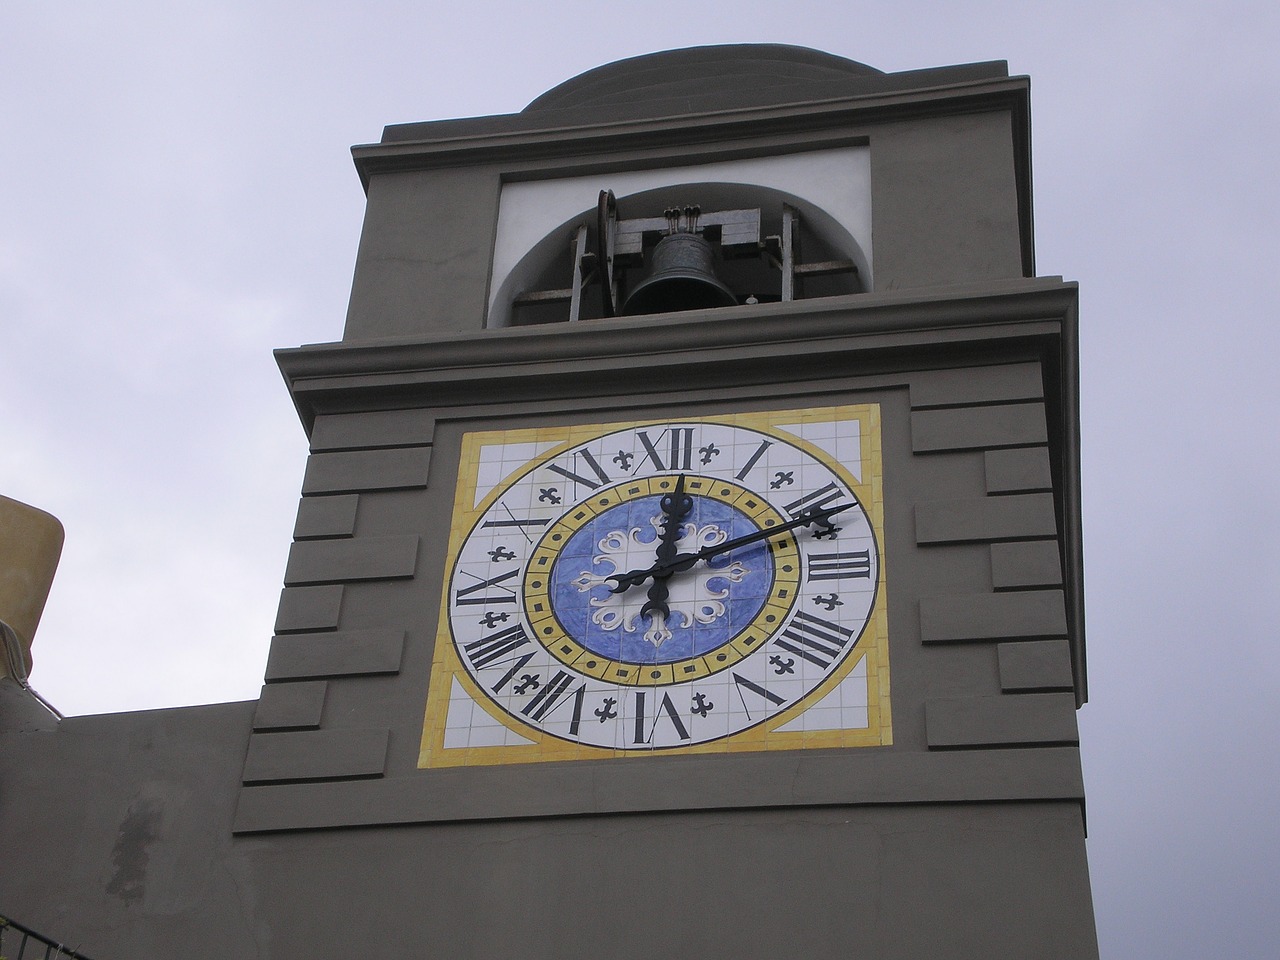 Square island. Часы на площади. Квадратная башня с часами. Башенные часы с кириллическими цифрами. Французские часы на площади.